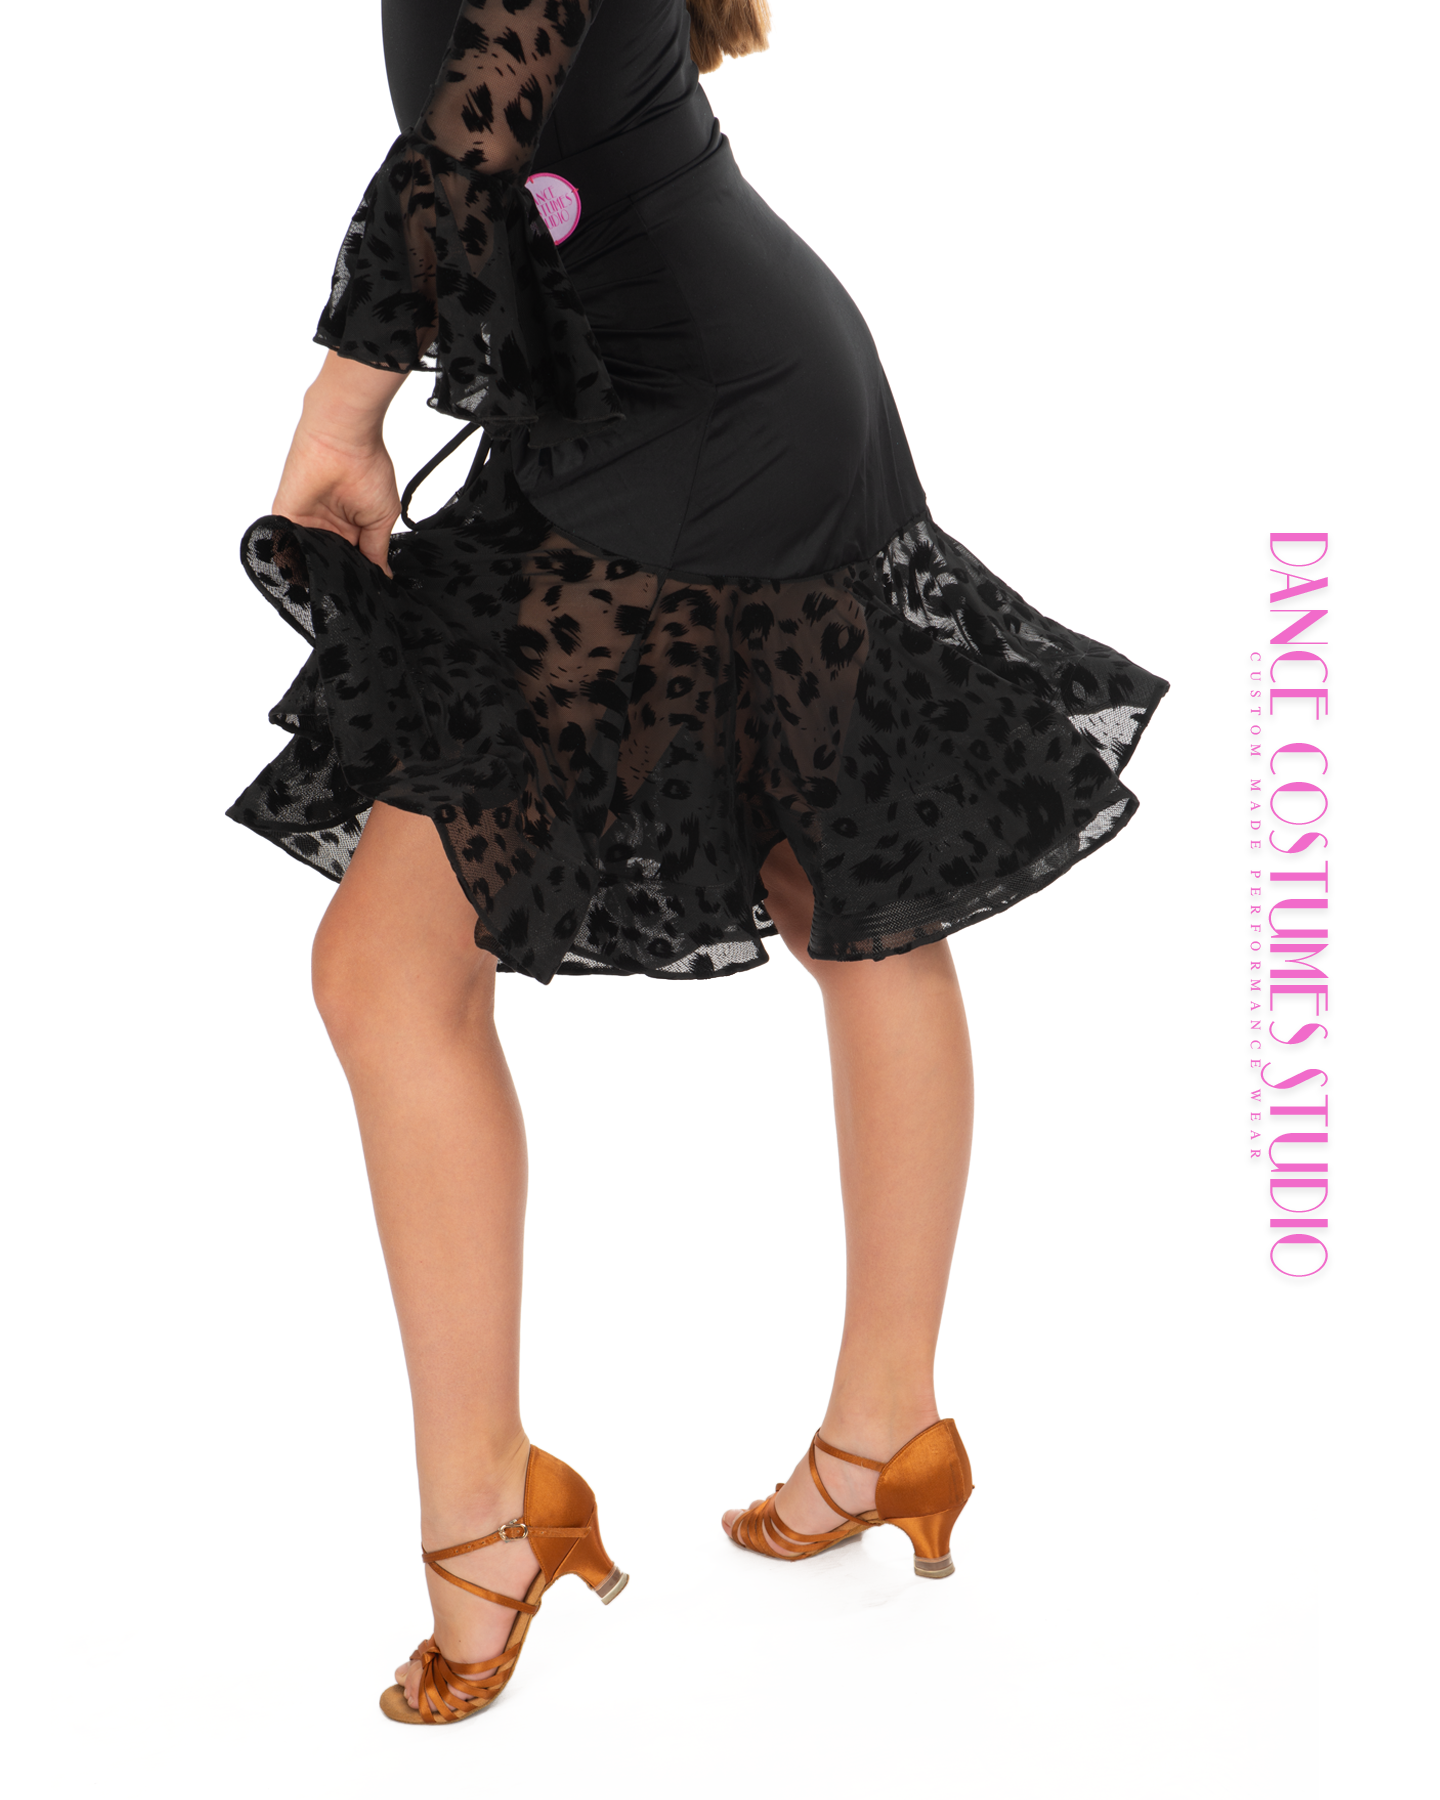 Rita Drawstring Dance Skirt - Pink